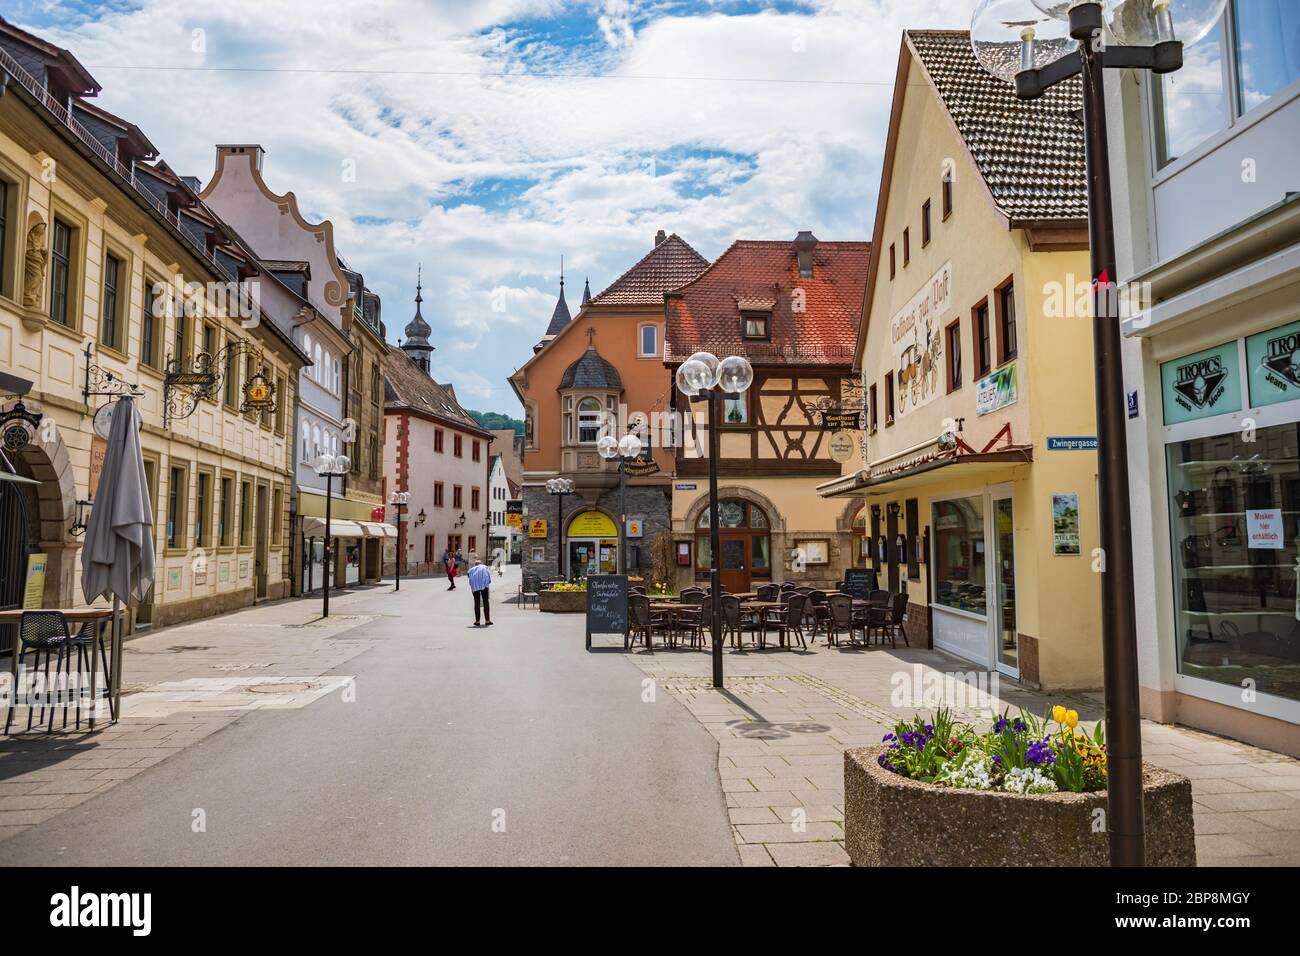 BAD KISSINGEN, GERMANY - CIRCA MAY, 2020: The townscape of Bad Kissingen, Bavaria, Germany Stock Photo